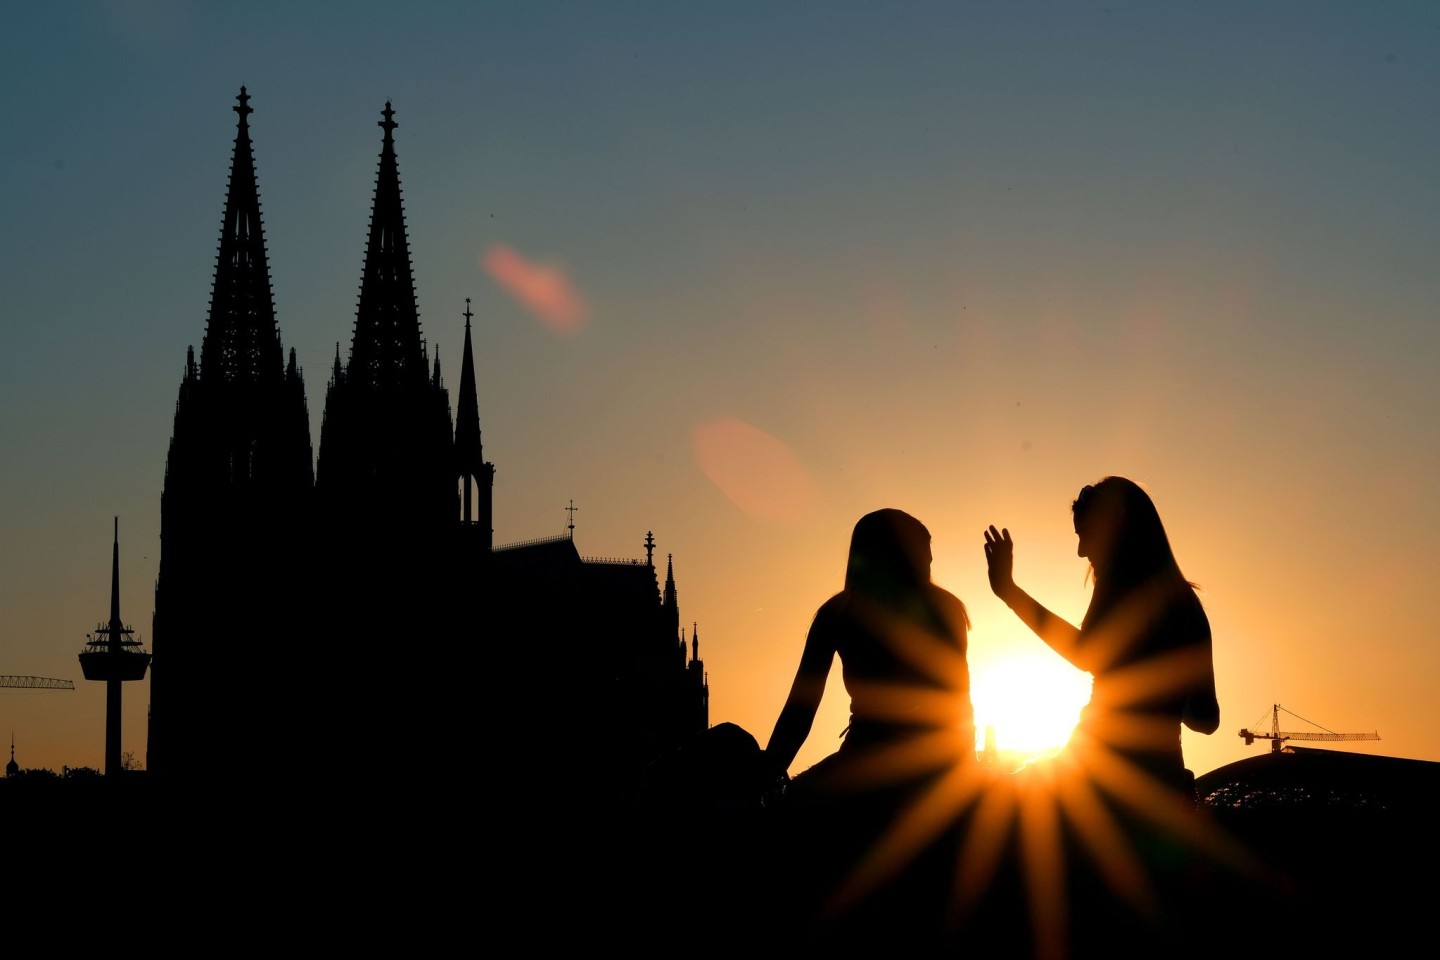 Zwei Frauen vor dem Kölner Dom: Beim ersten Date verzichten junge Leute nach Tinder-Angaben heutzutage lieber auf Alkohol und treffen sich zu kulturellen Aktivitäten oder draußen statt i...